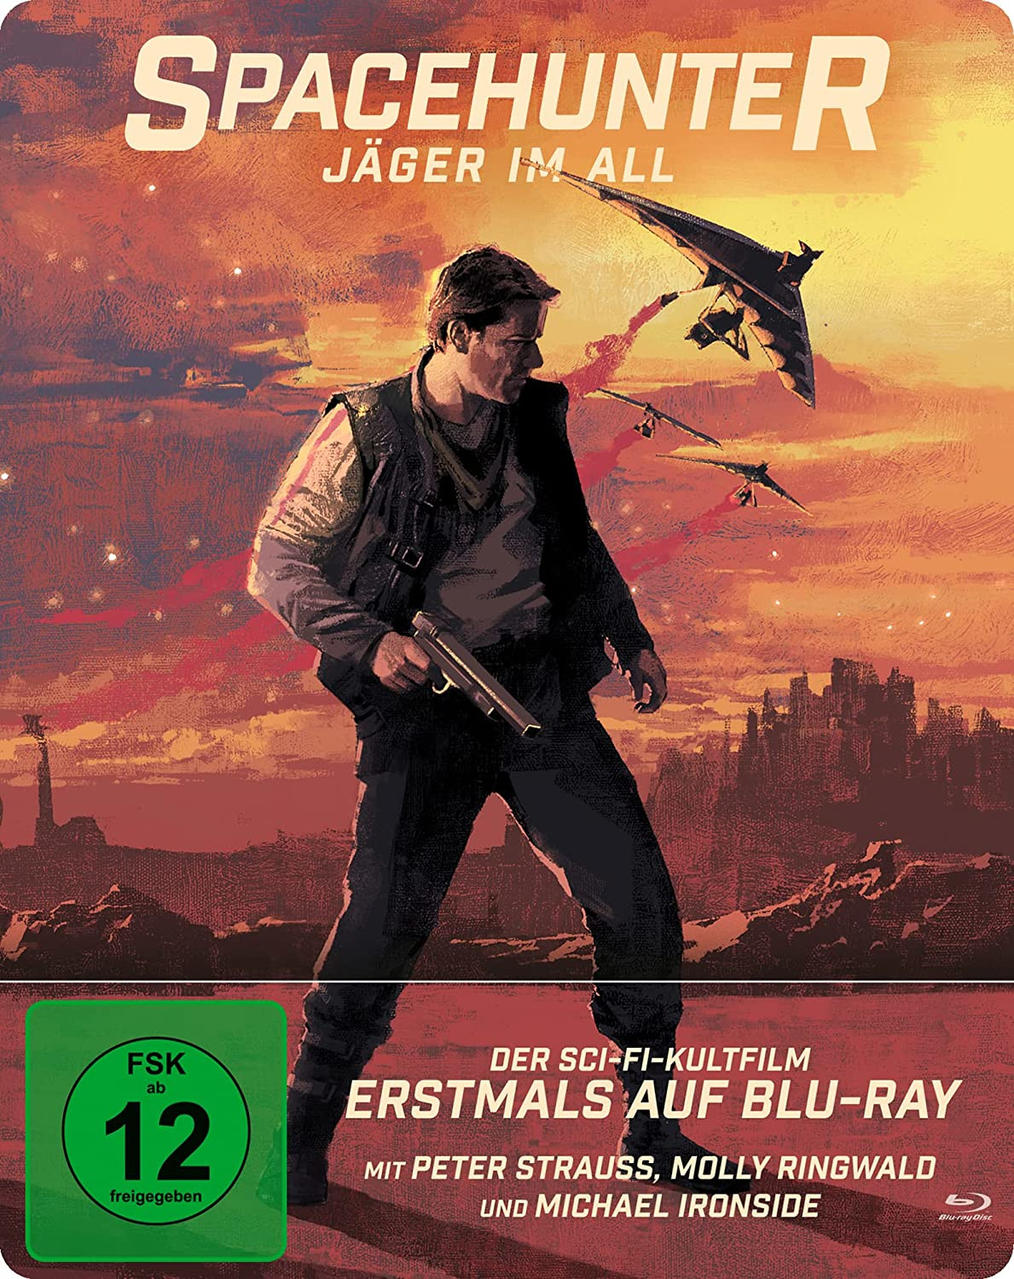 Blu-ray - im Jäger All Spacehunter